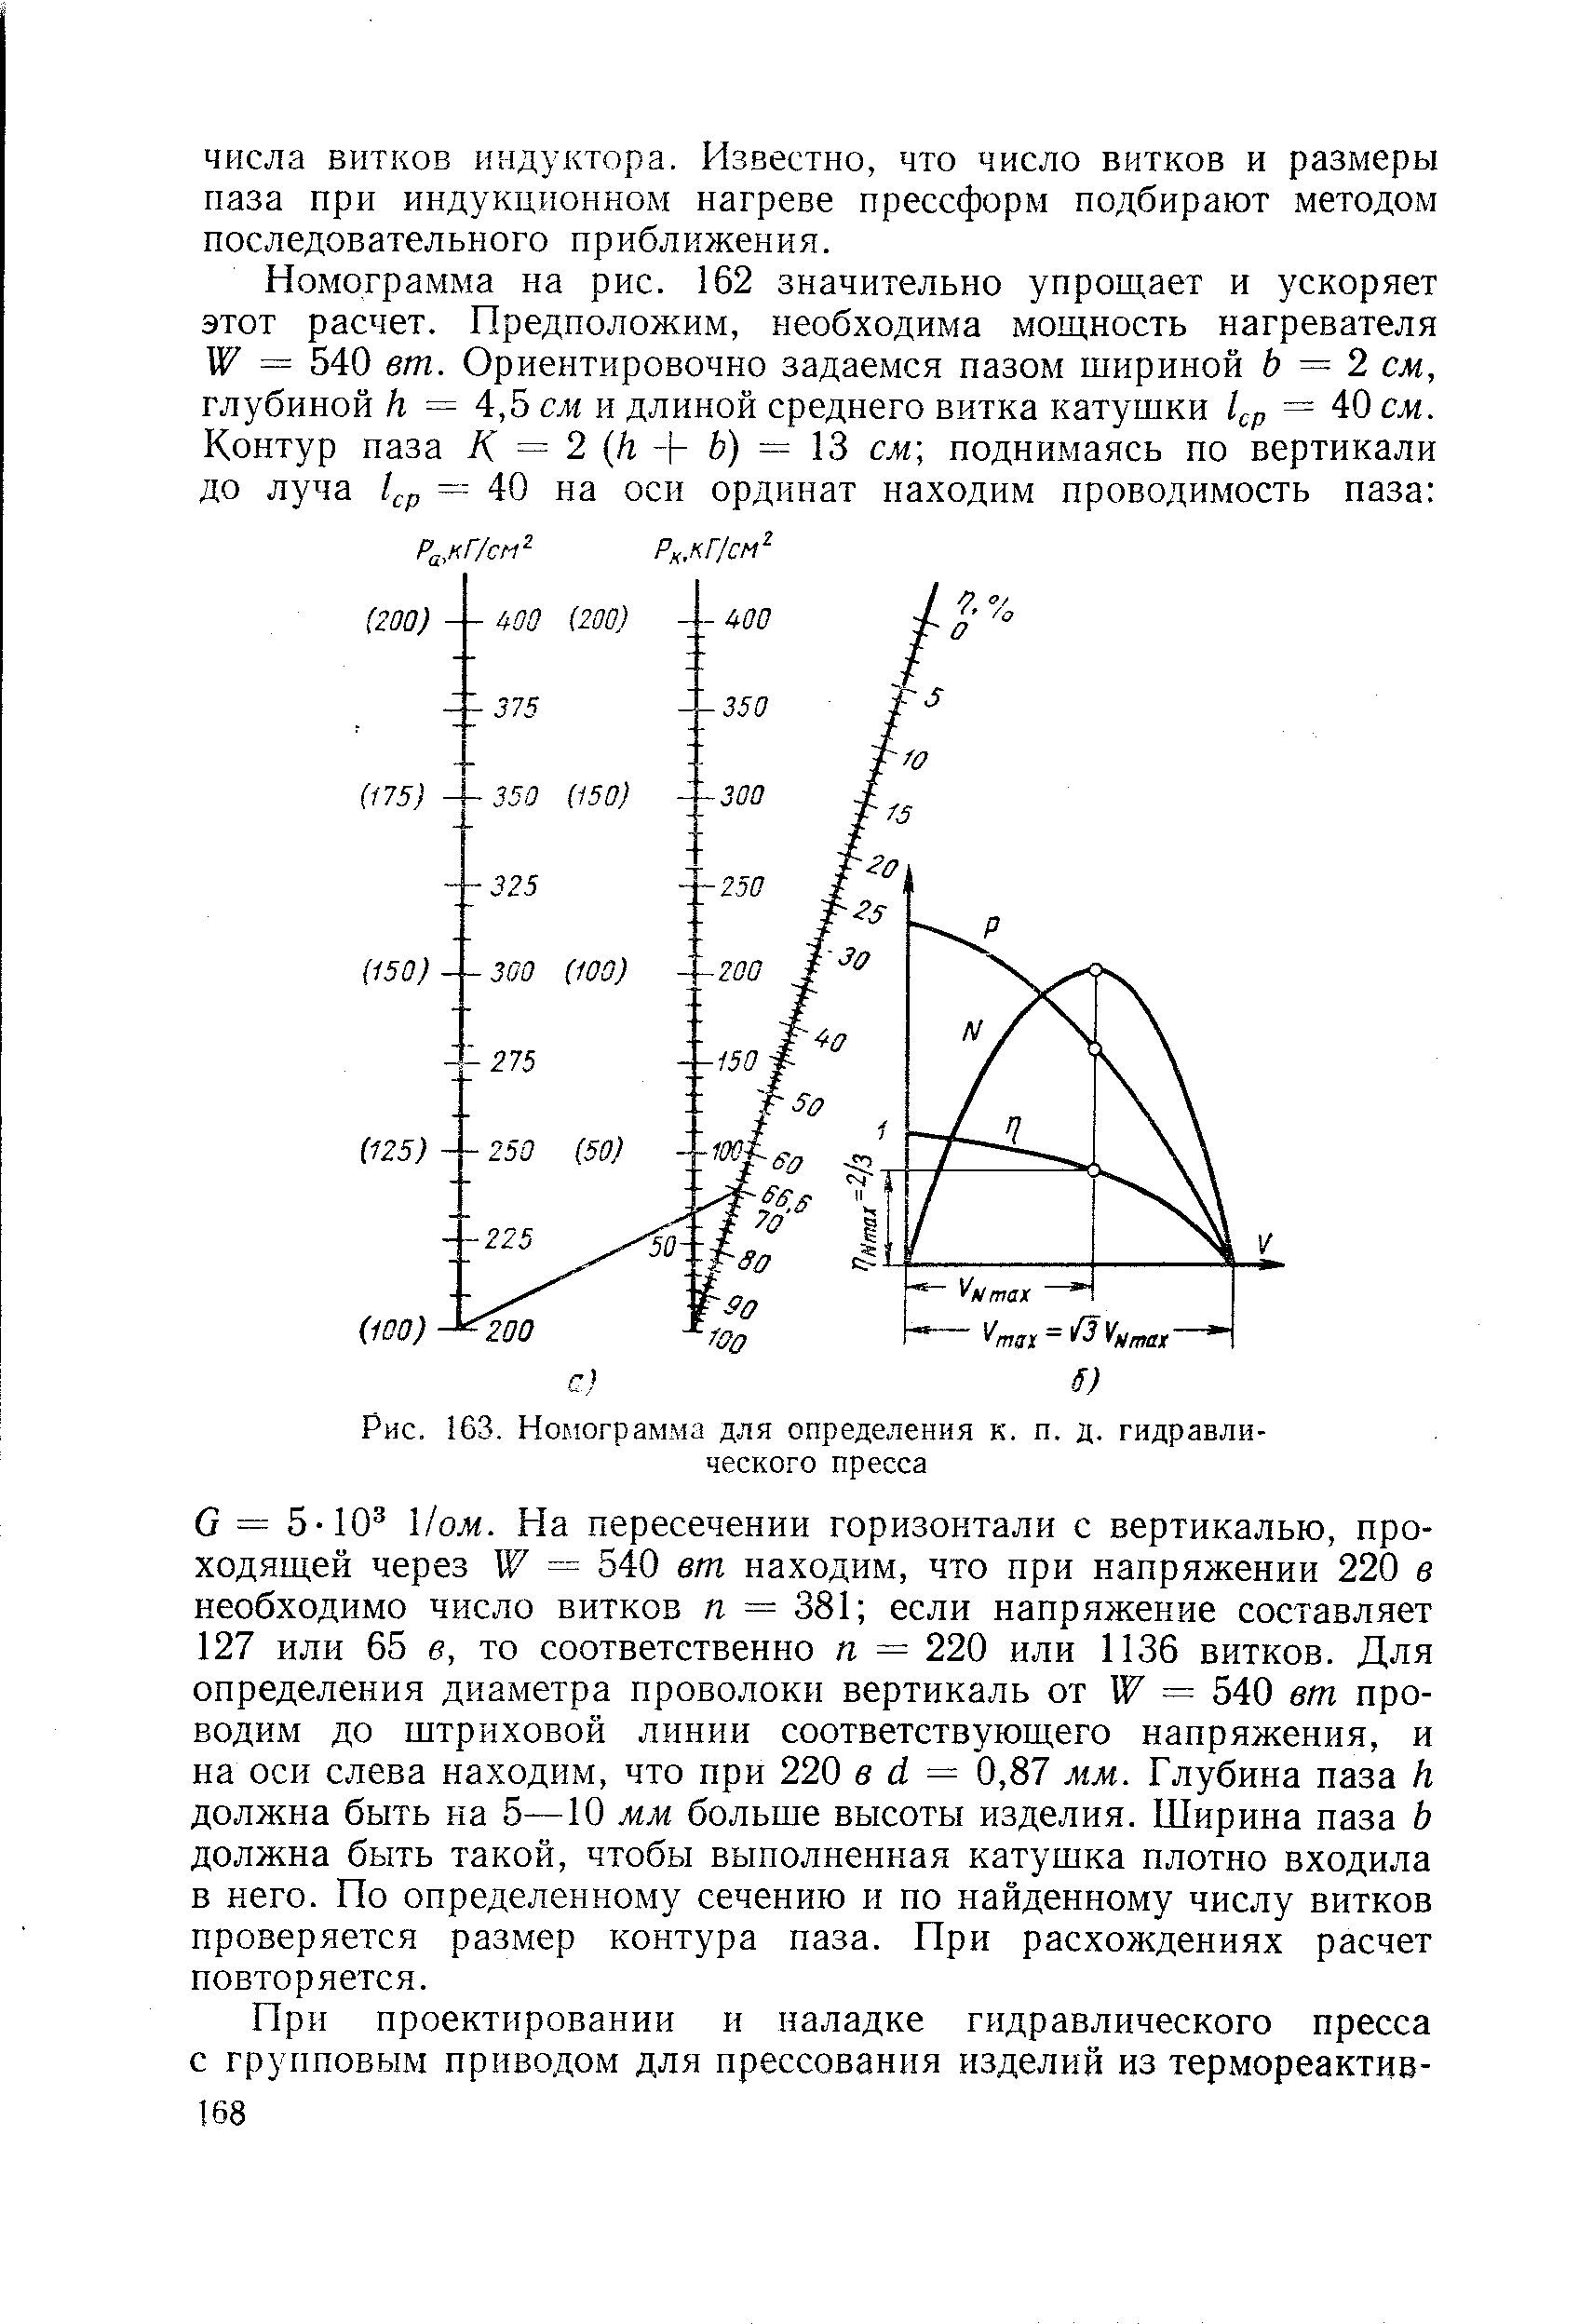 Рис. 163. Номограмма для определения к. п. д. гидравлического пресса
